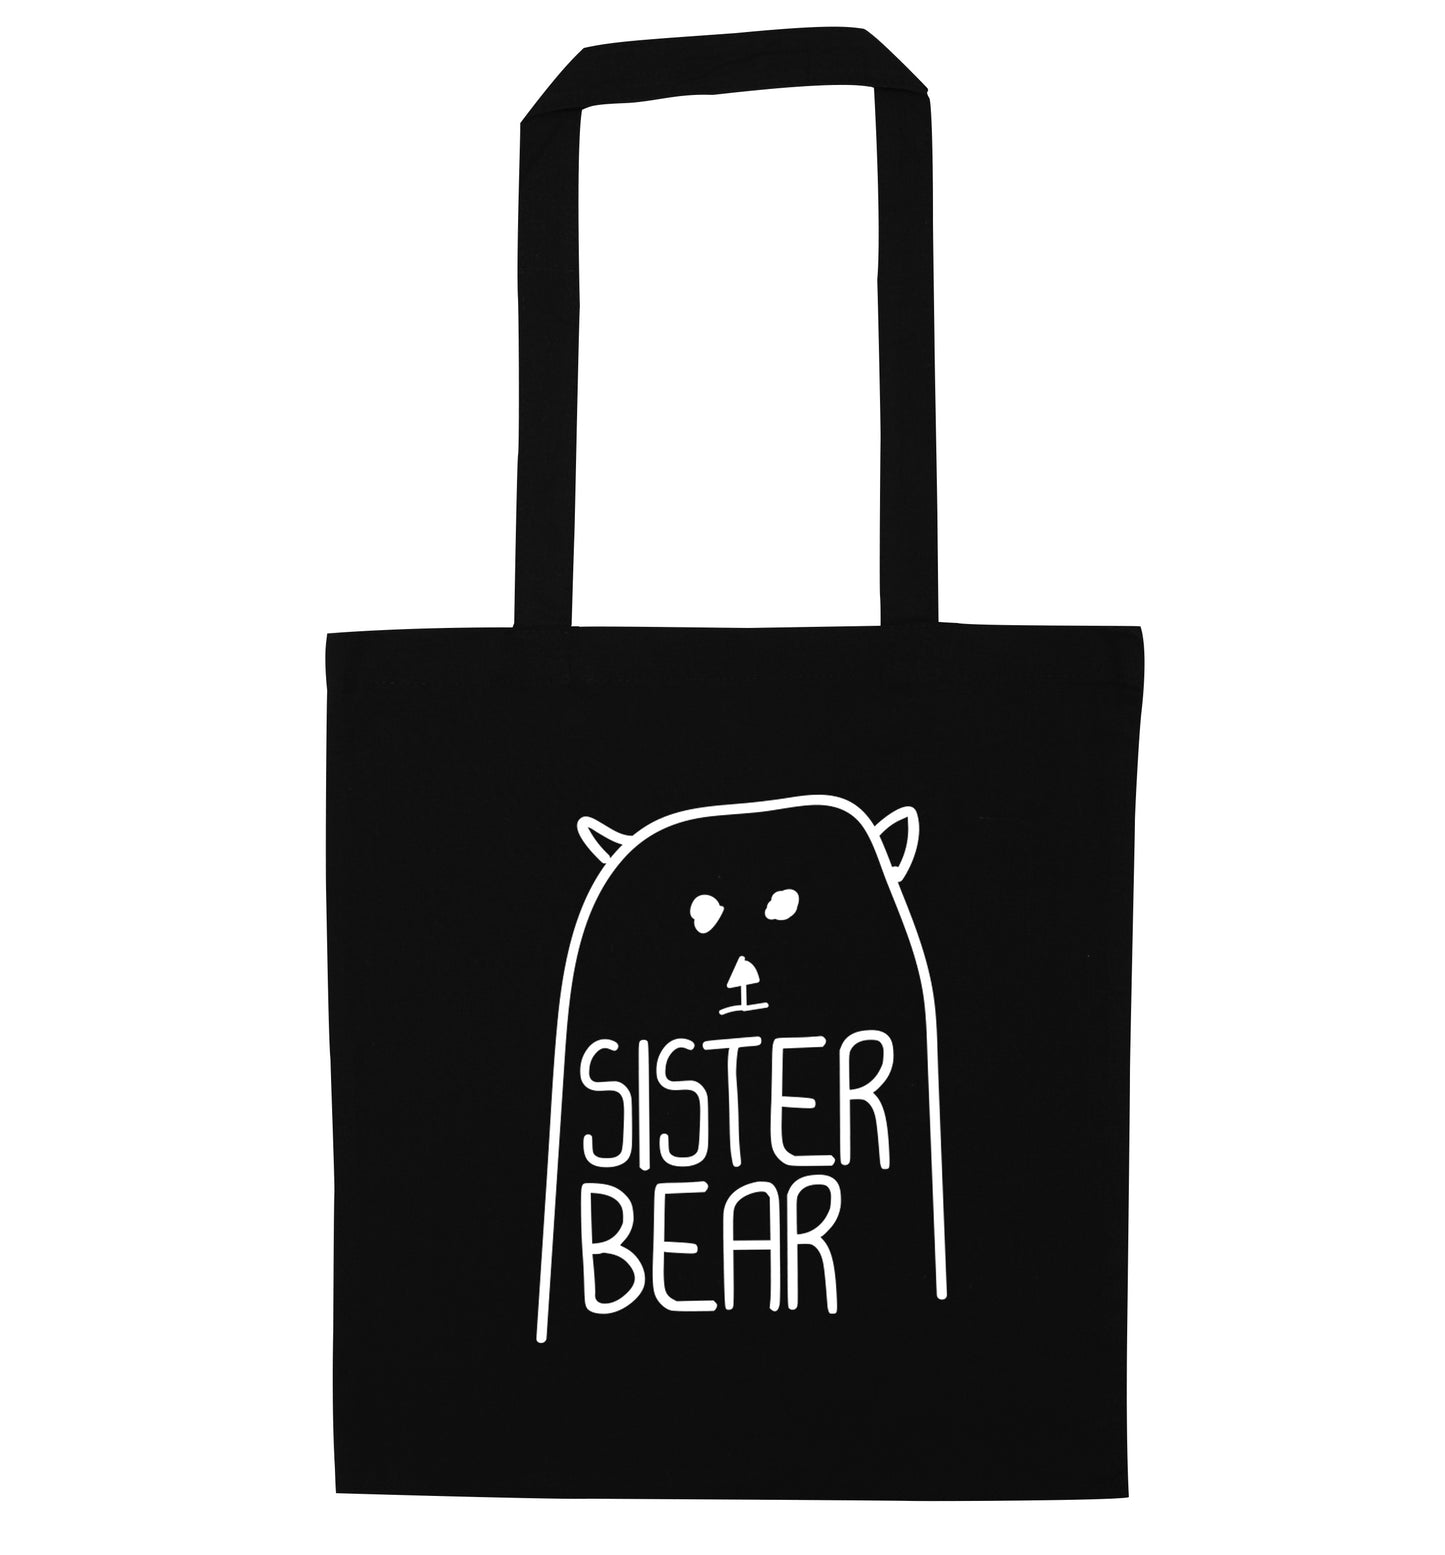 Sister bear black tote bag